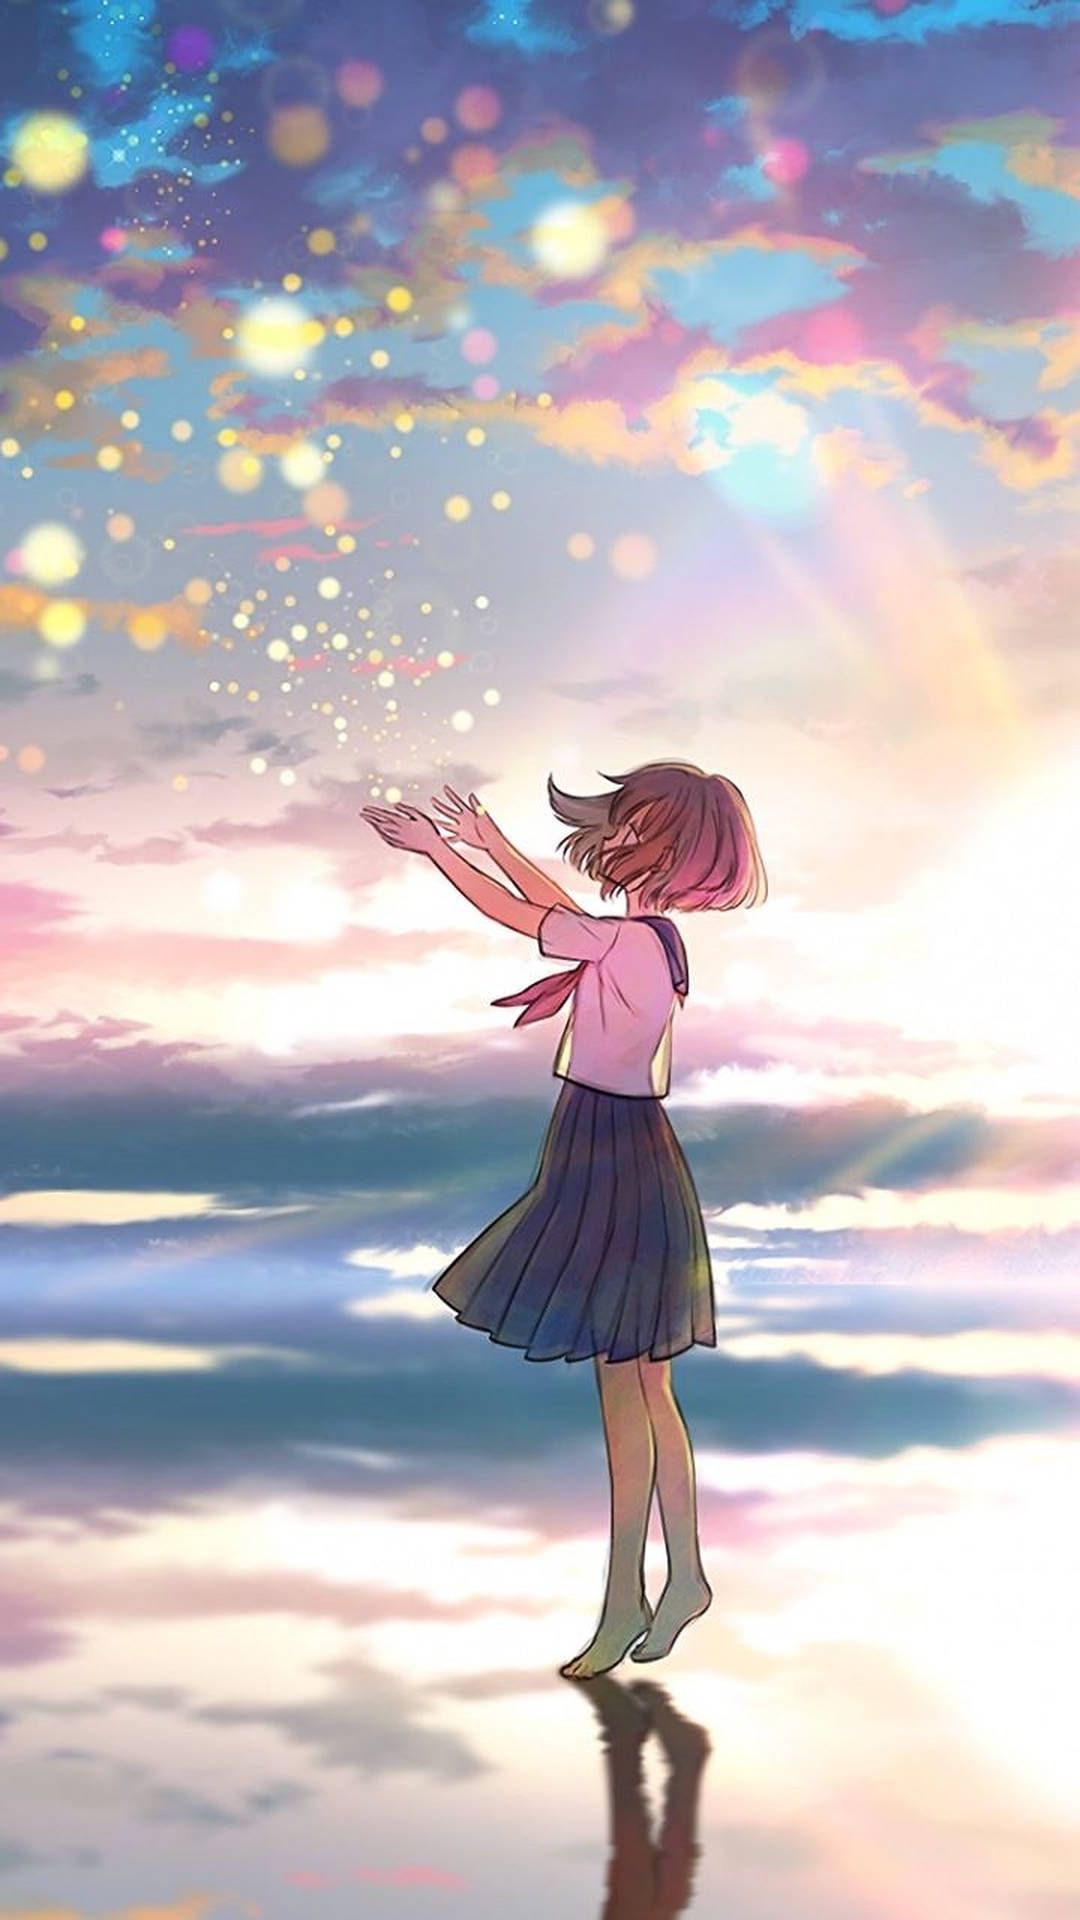 Anime girl reaching for the stars wallpaper - Anime girl, HD